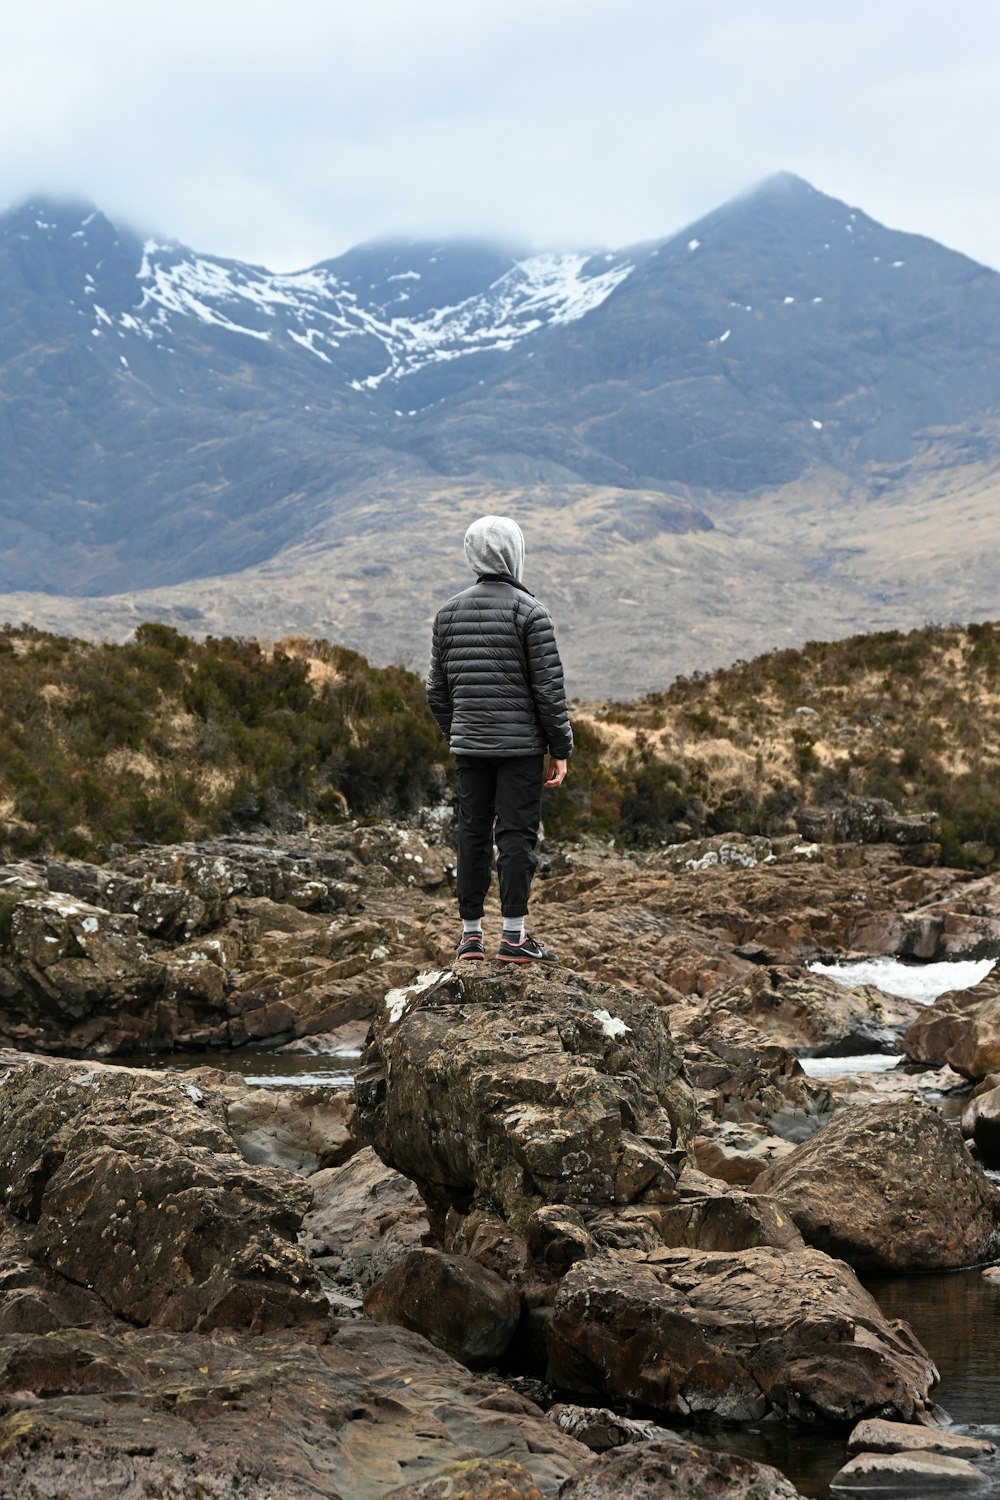 une personne debout sur une colline rocheuse surplombant une chaîne de montagnes enneigée